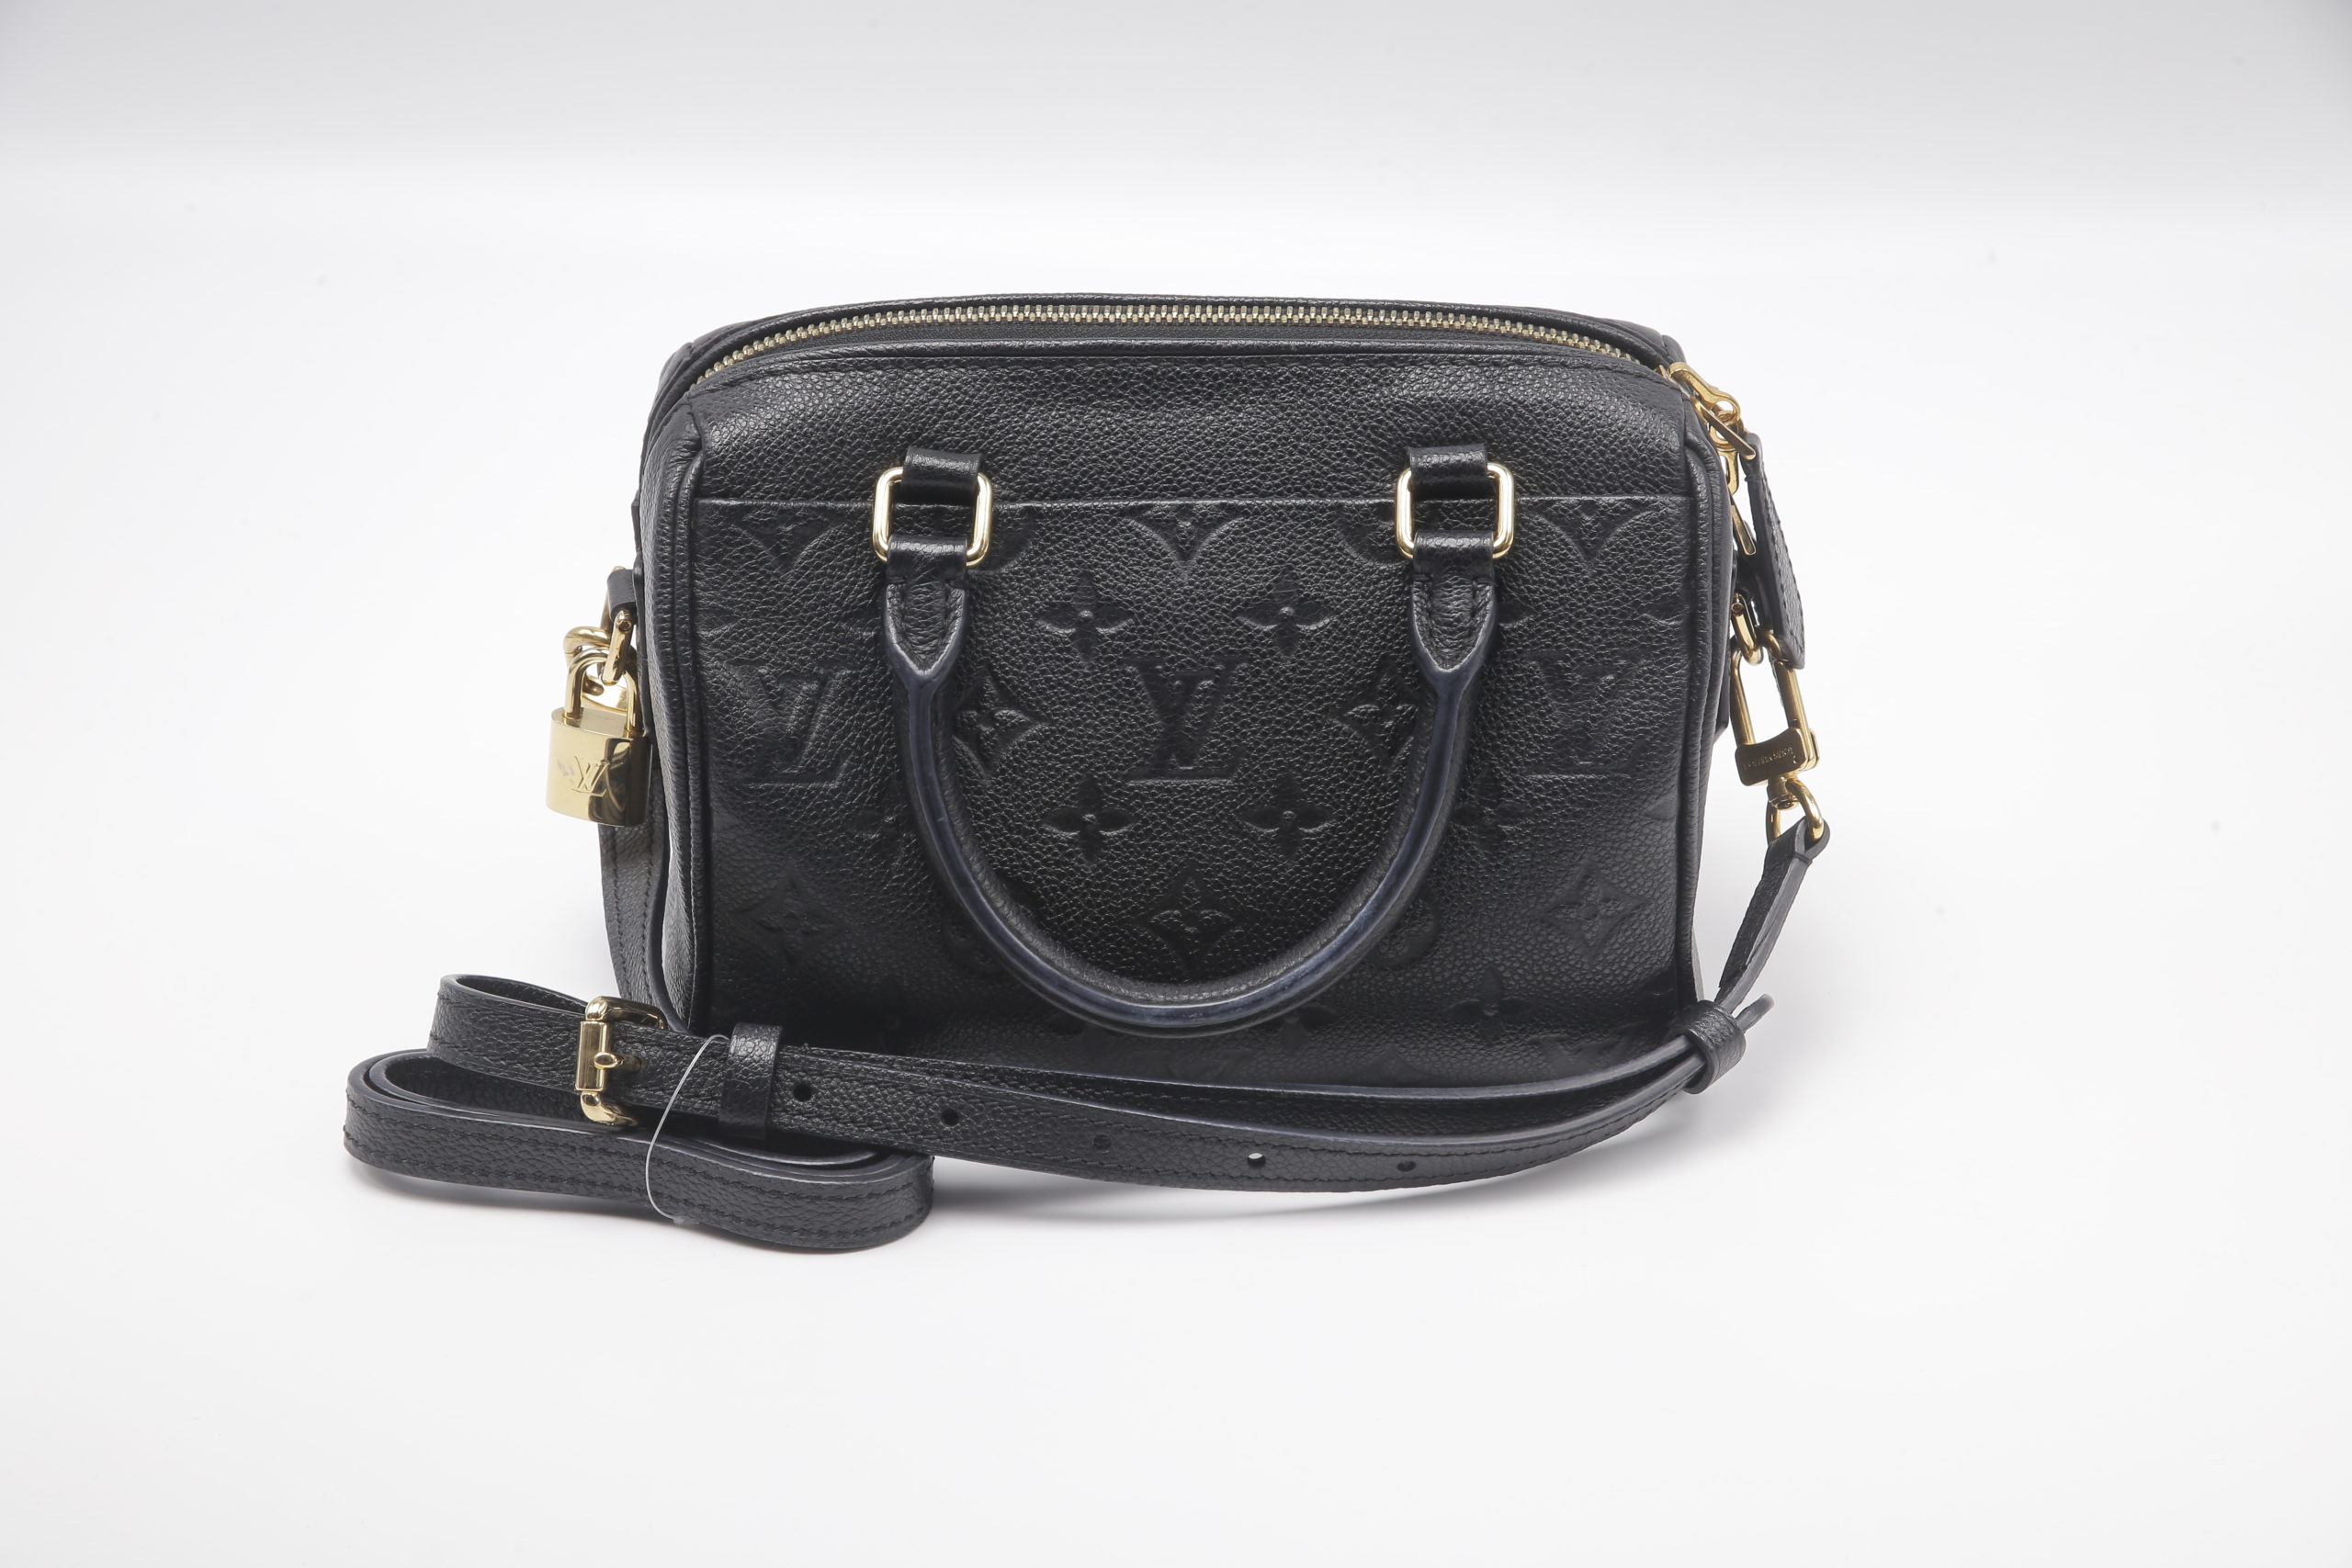 Unboxing Louis Vuitton Speedy bandouliere 25 Empreinte & Bag Charm 